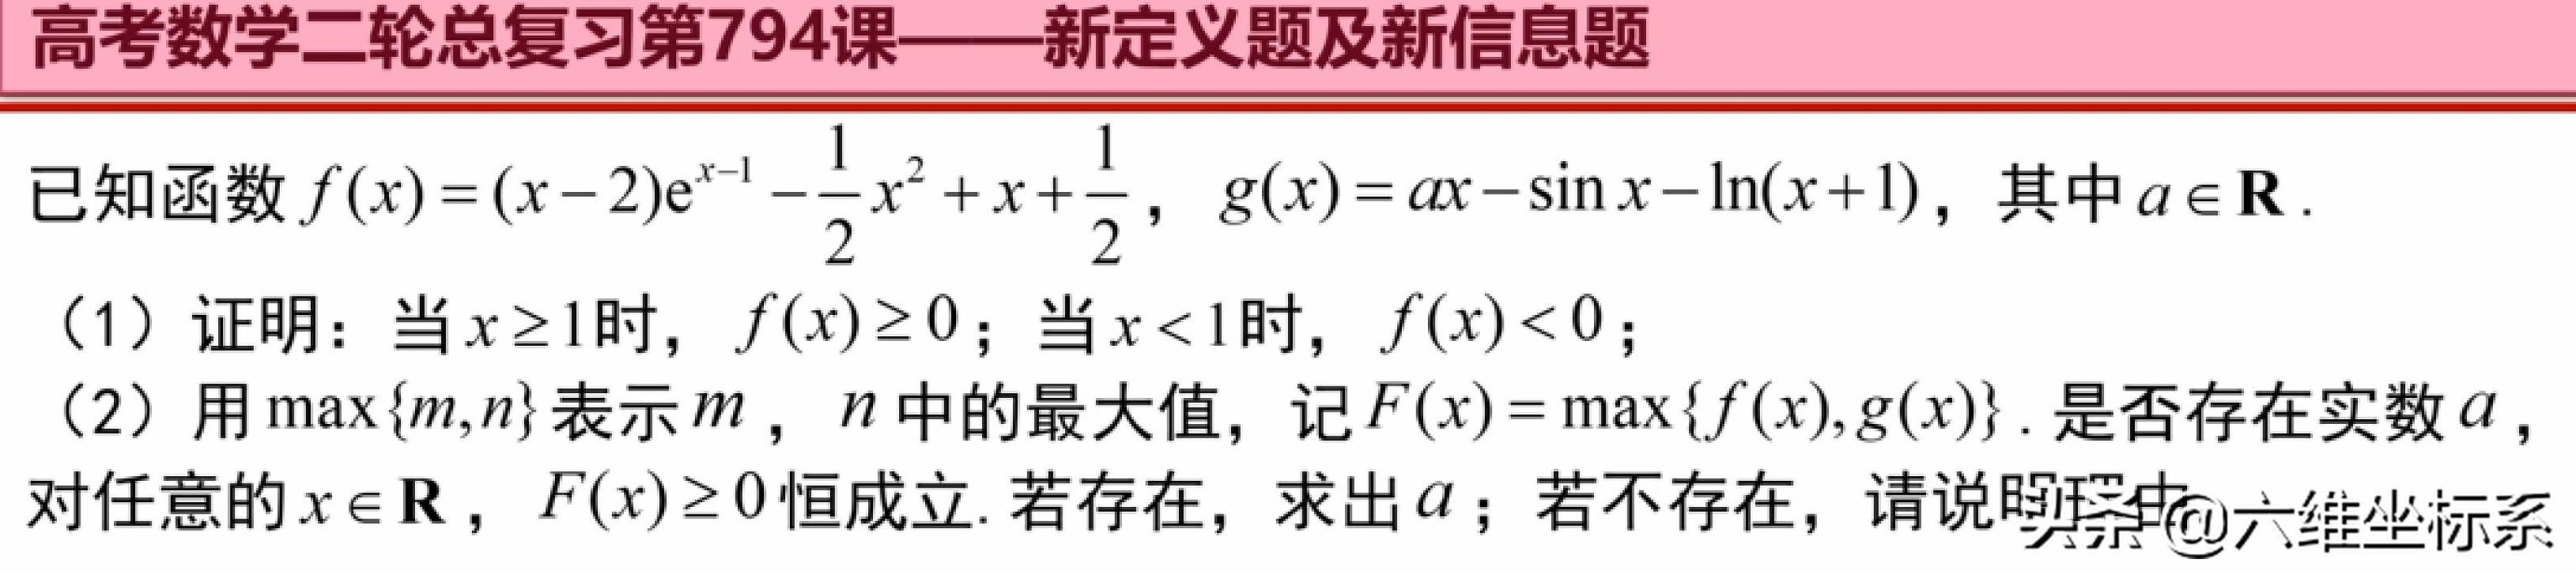 二阶导数经典例子,二阶导数详细计算题(2)